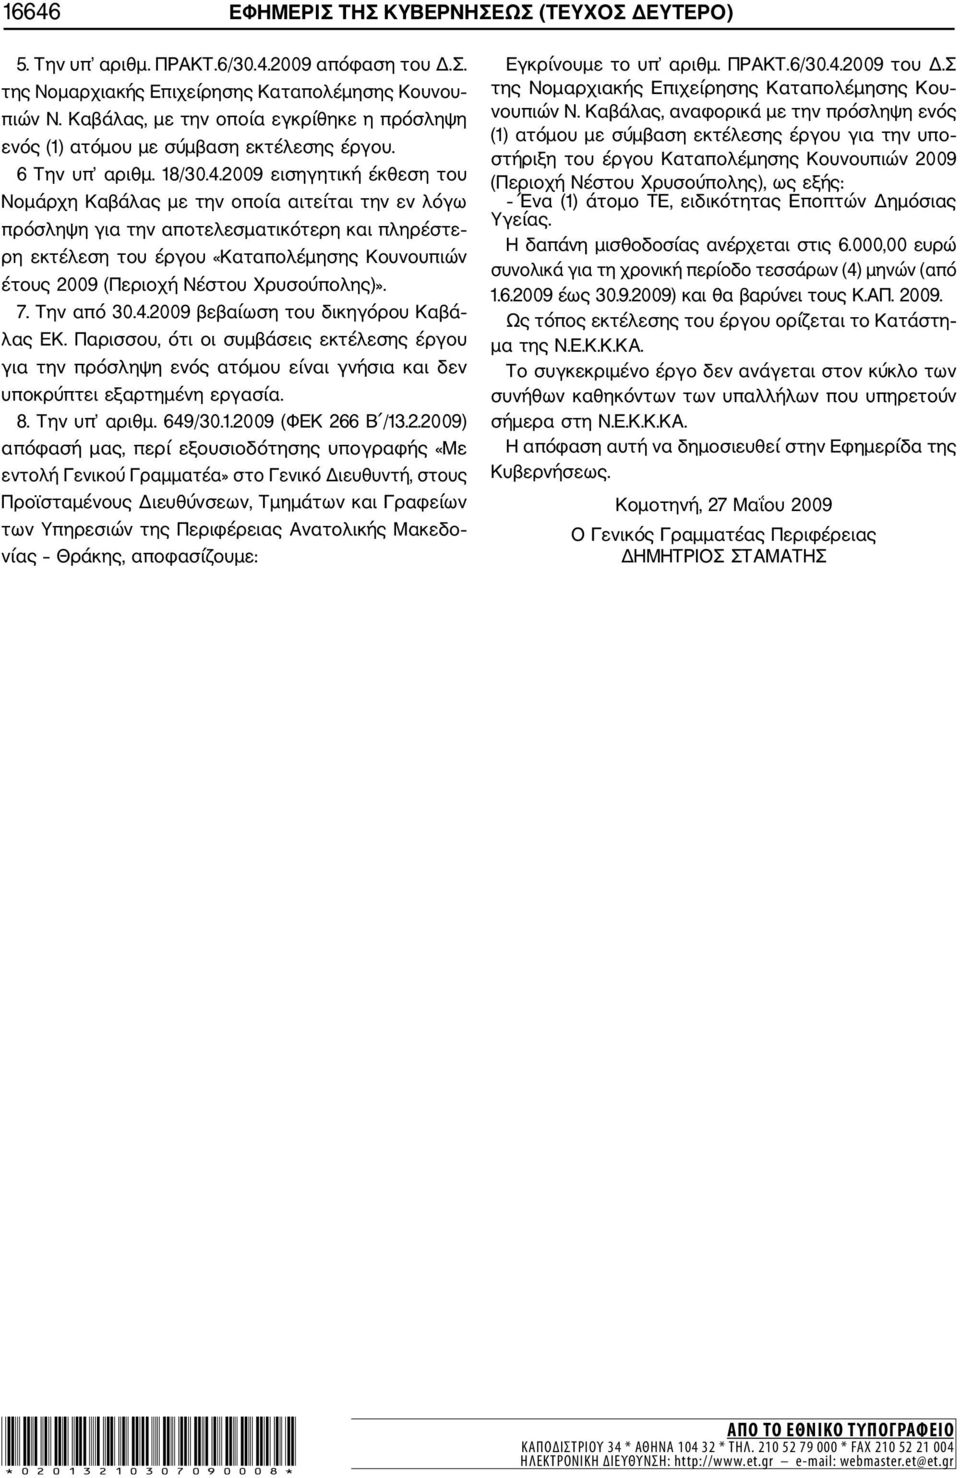 2009 εισηγητική έκθεση του Νομάρχη Καβάλας με την οποία αιτείται την εν λόγω πρόσληψη για την αποτελεσματικότερη και πληρέστε ρη εκτέλεση του έργου «Καταπολέμησης Κουνουπιών έτους 2009 (Περιοχή